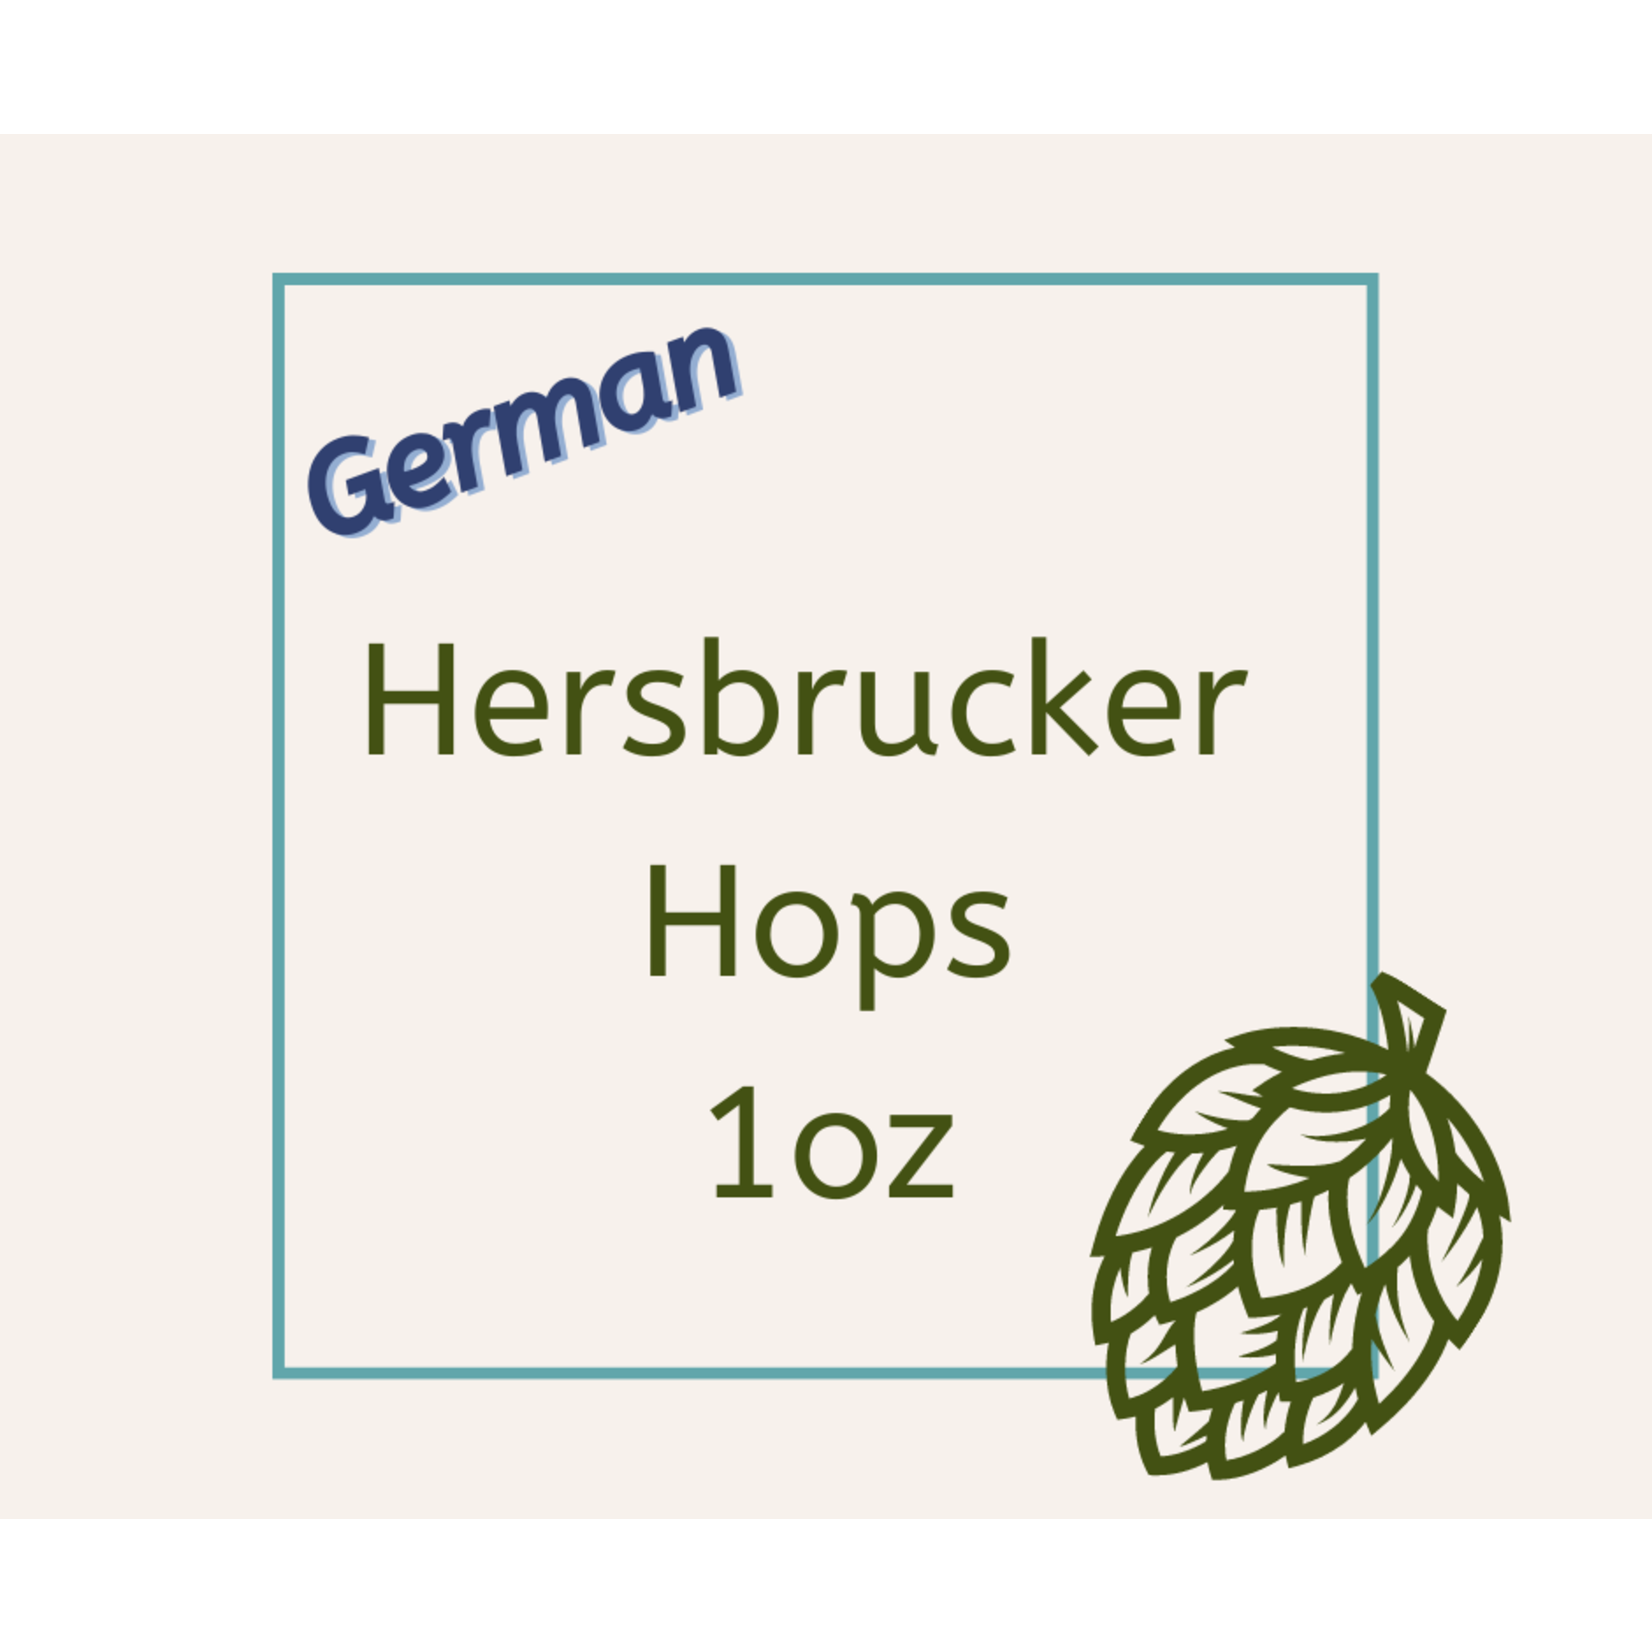 Hersbrucker German   Hops 1 OZ